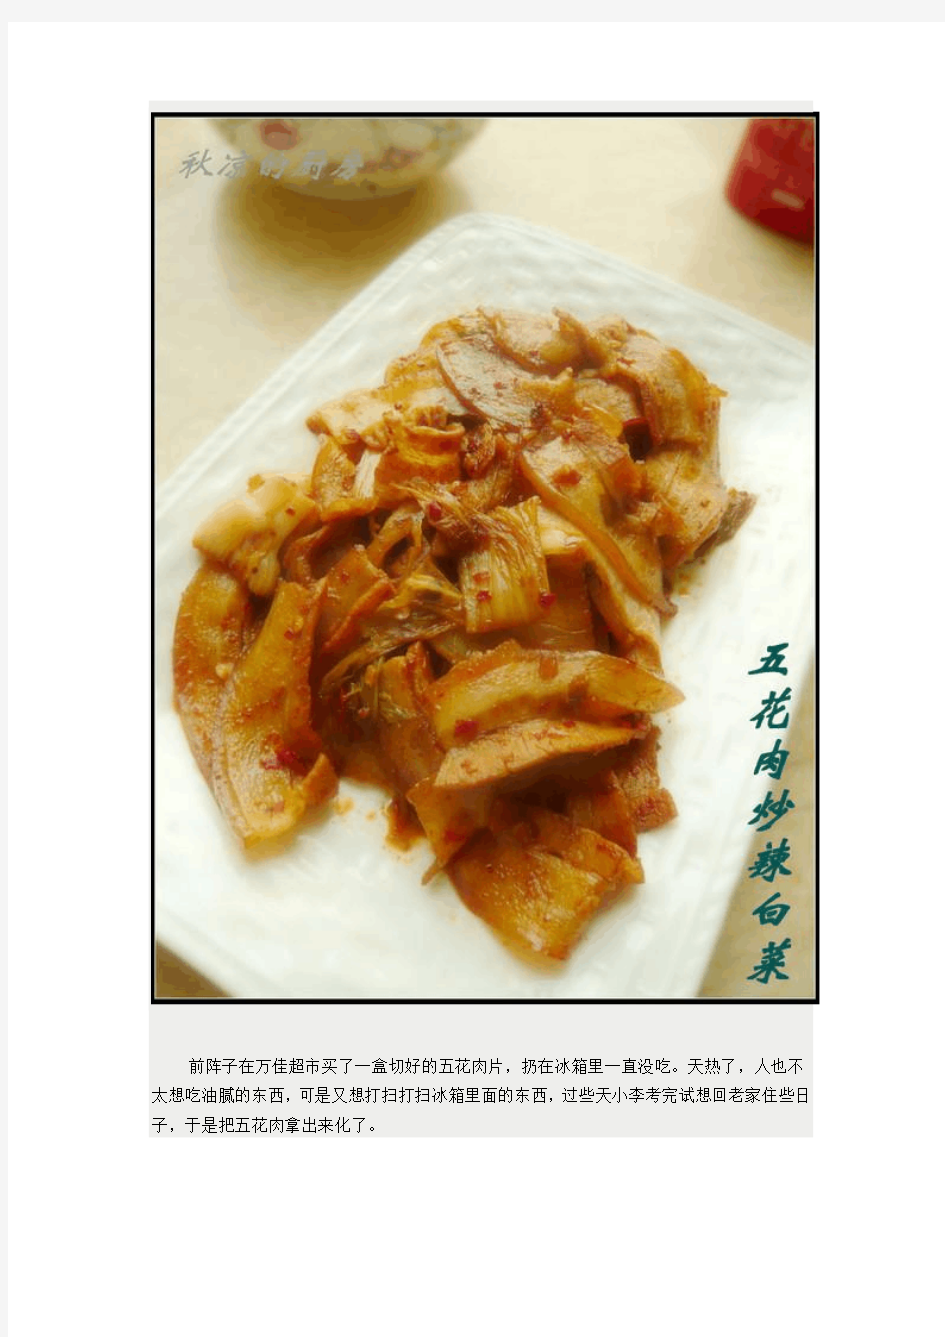 1韩式风味——五花肉炒辣白菜